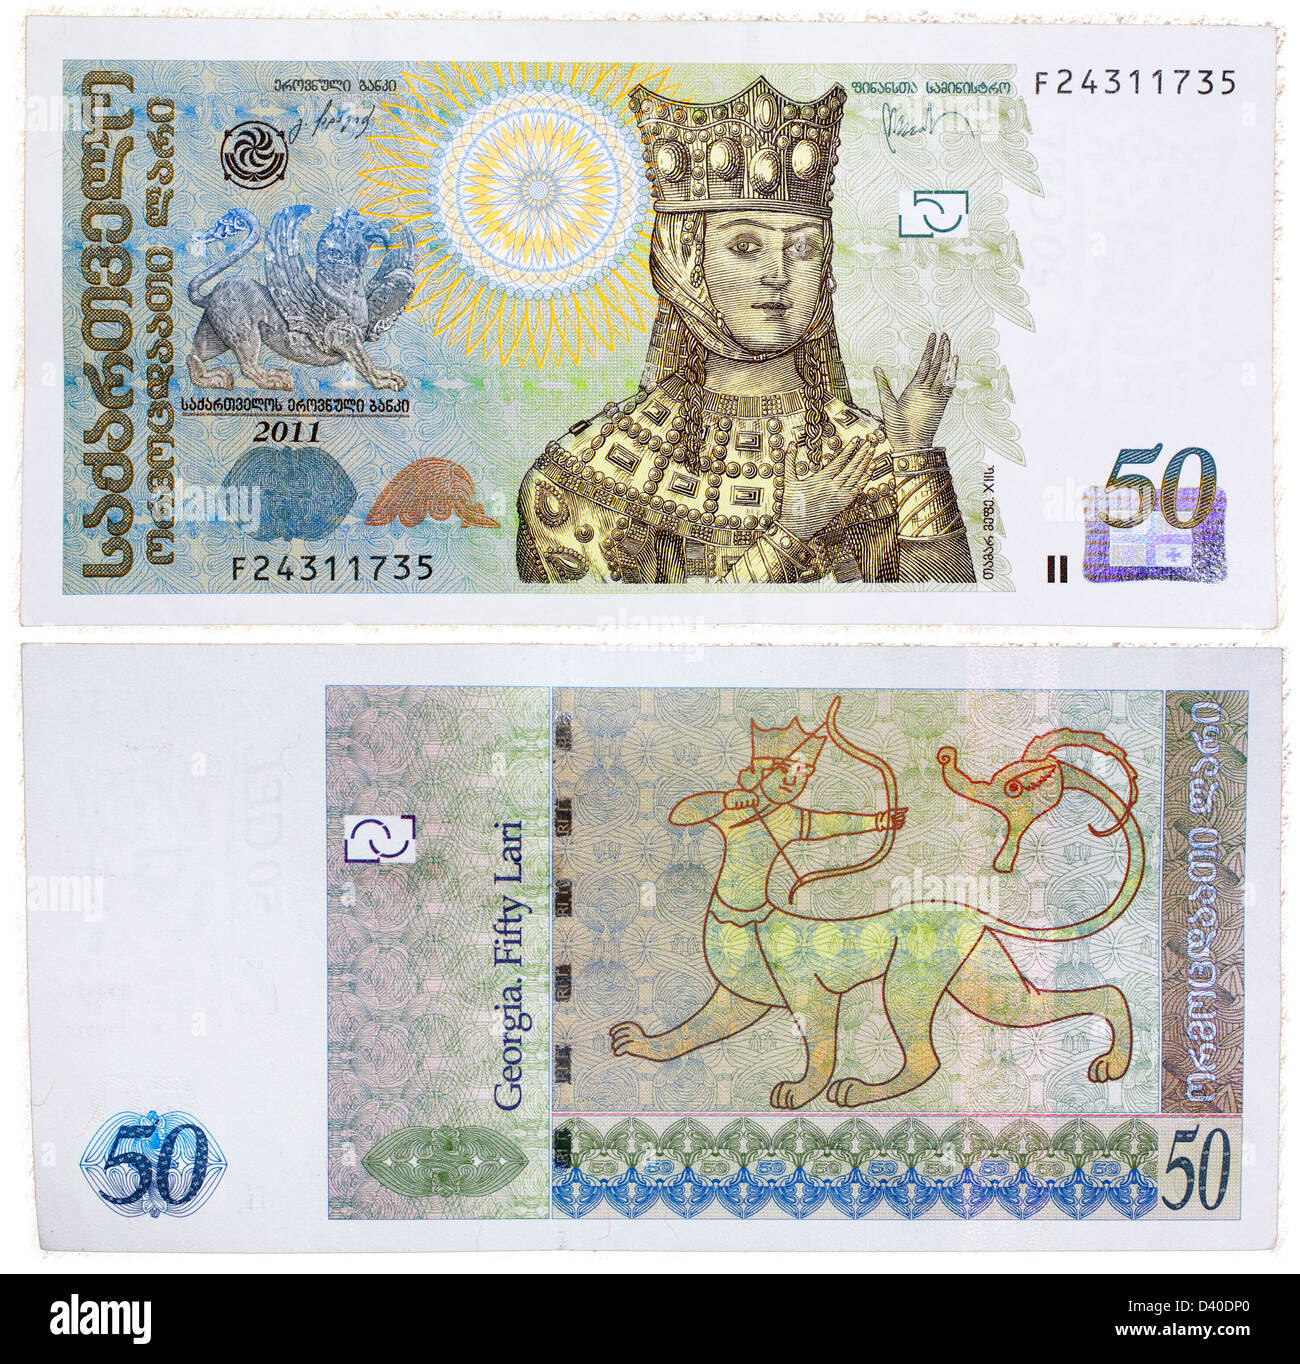 Billet de 50 lari, la Reine Tamar et art ancien avec la Géorgie, Centaur, 2011 Banque D'Images